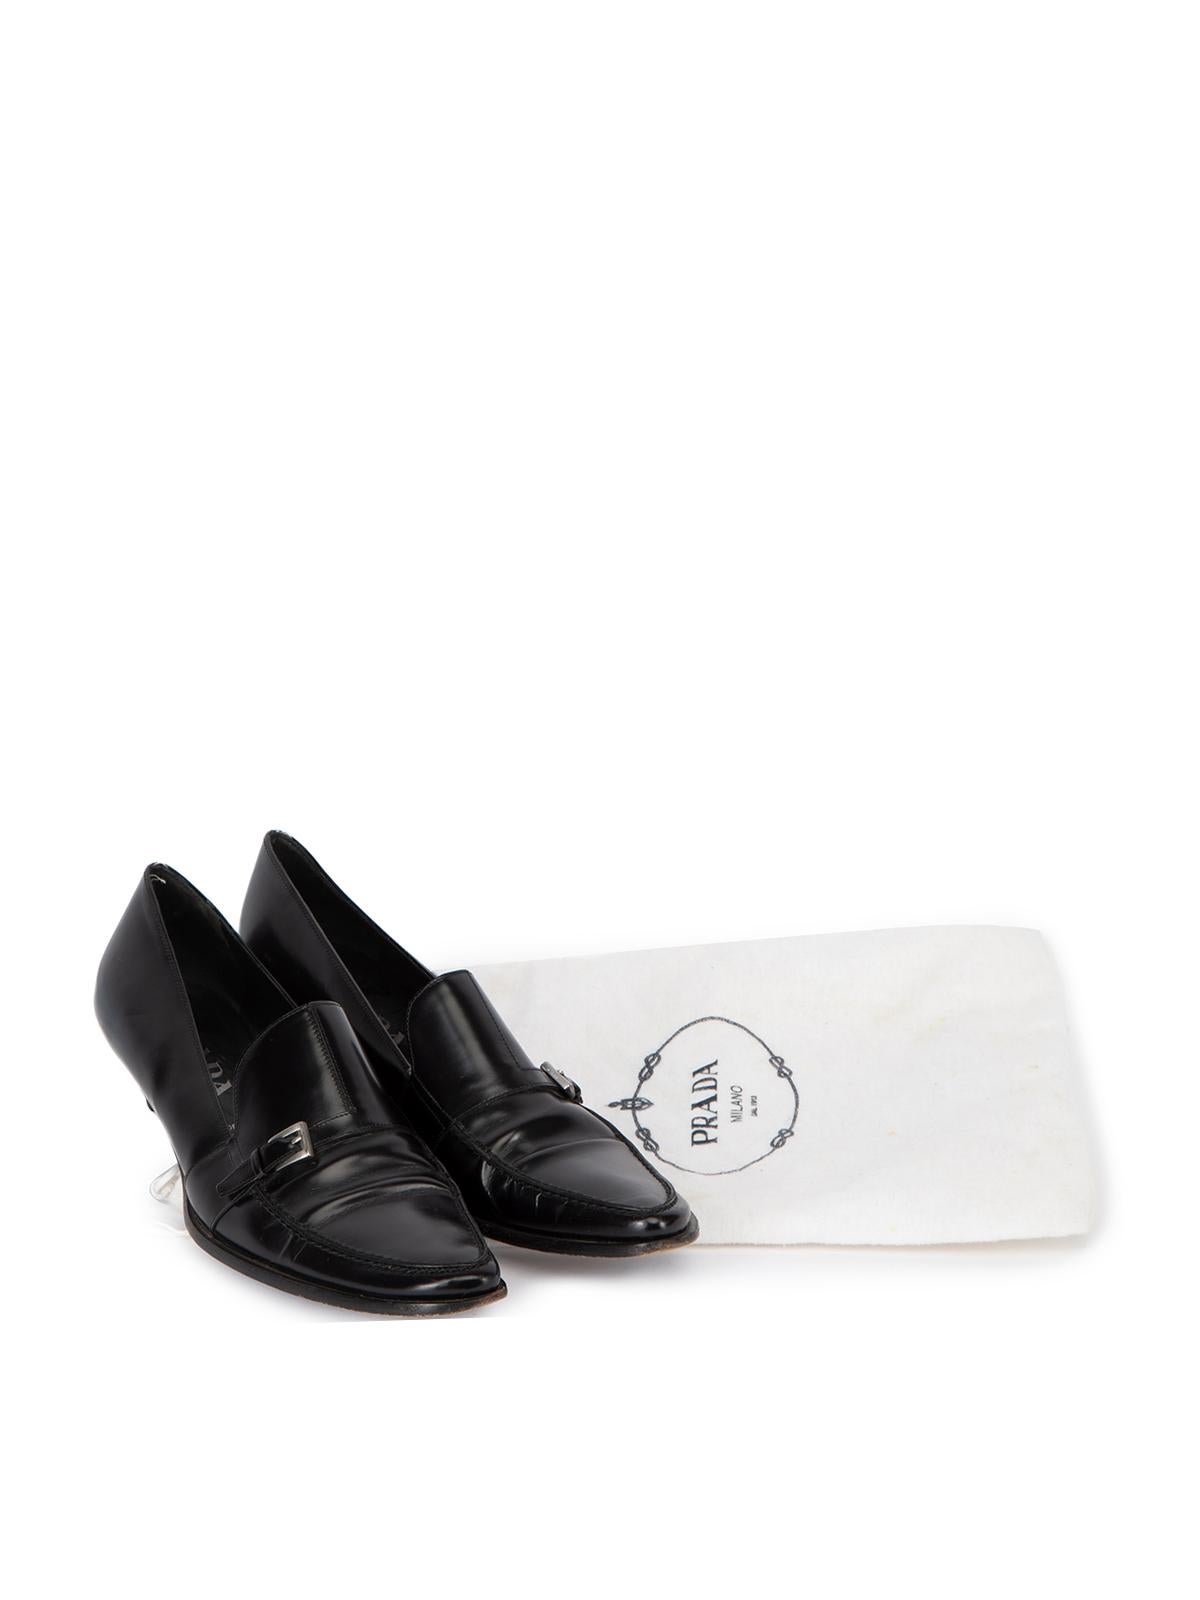 Pre-Loved Prada Women's Black Leather Kitten Heels Loafers 2